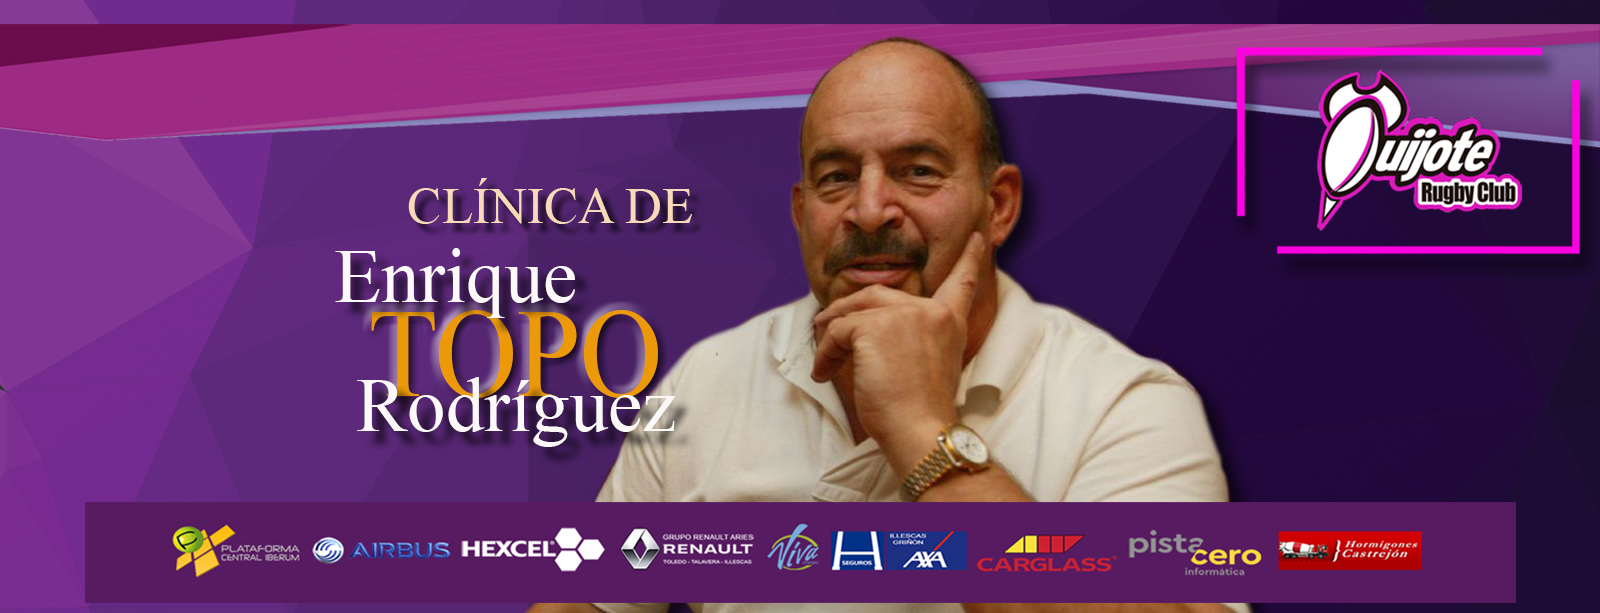 Clínica de scrum de Enrique Topo Rodríguez para Quijote Rugby Club